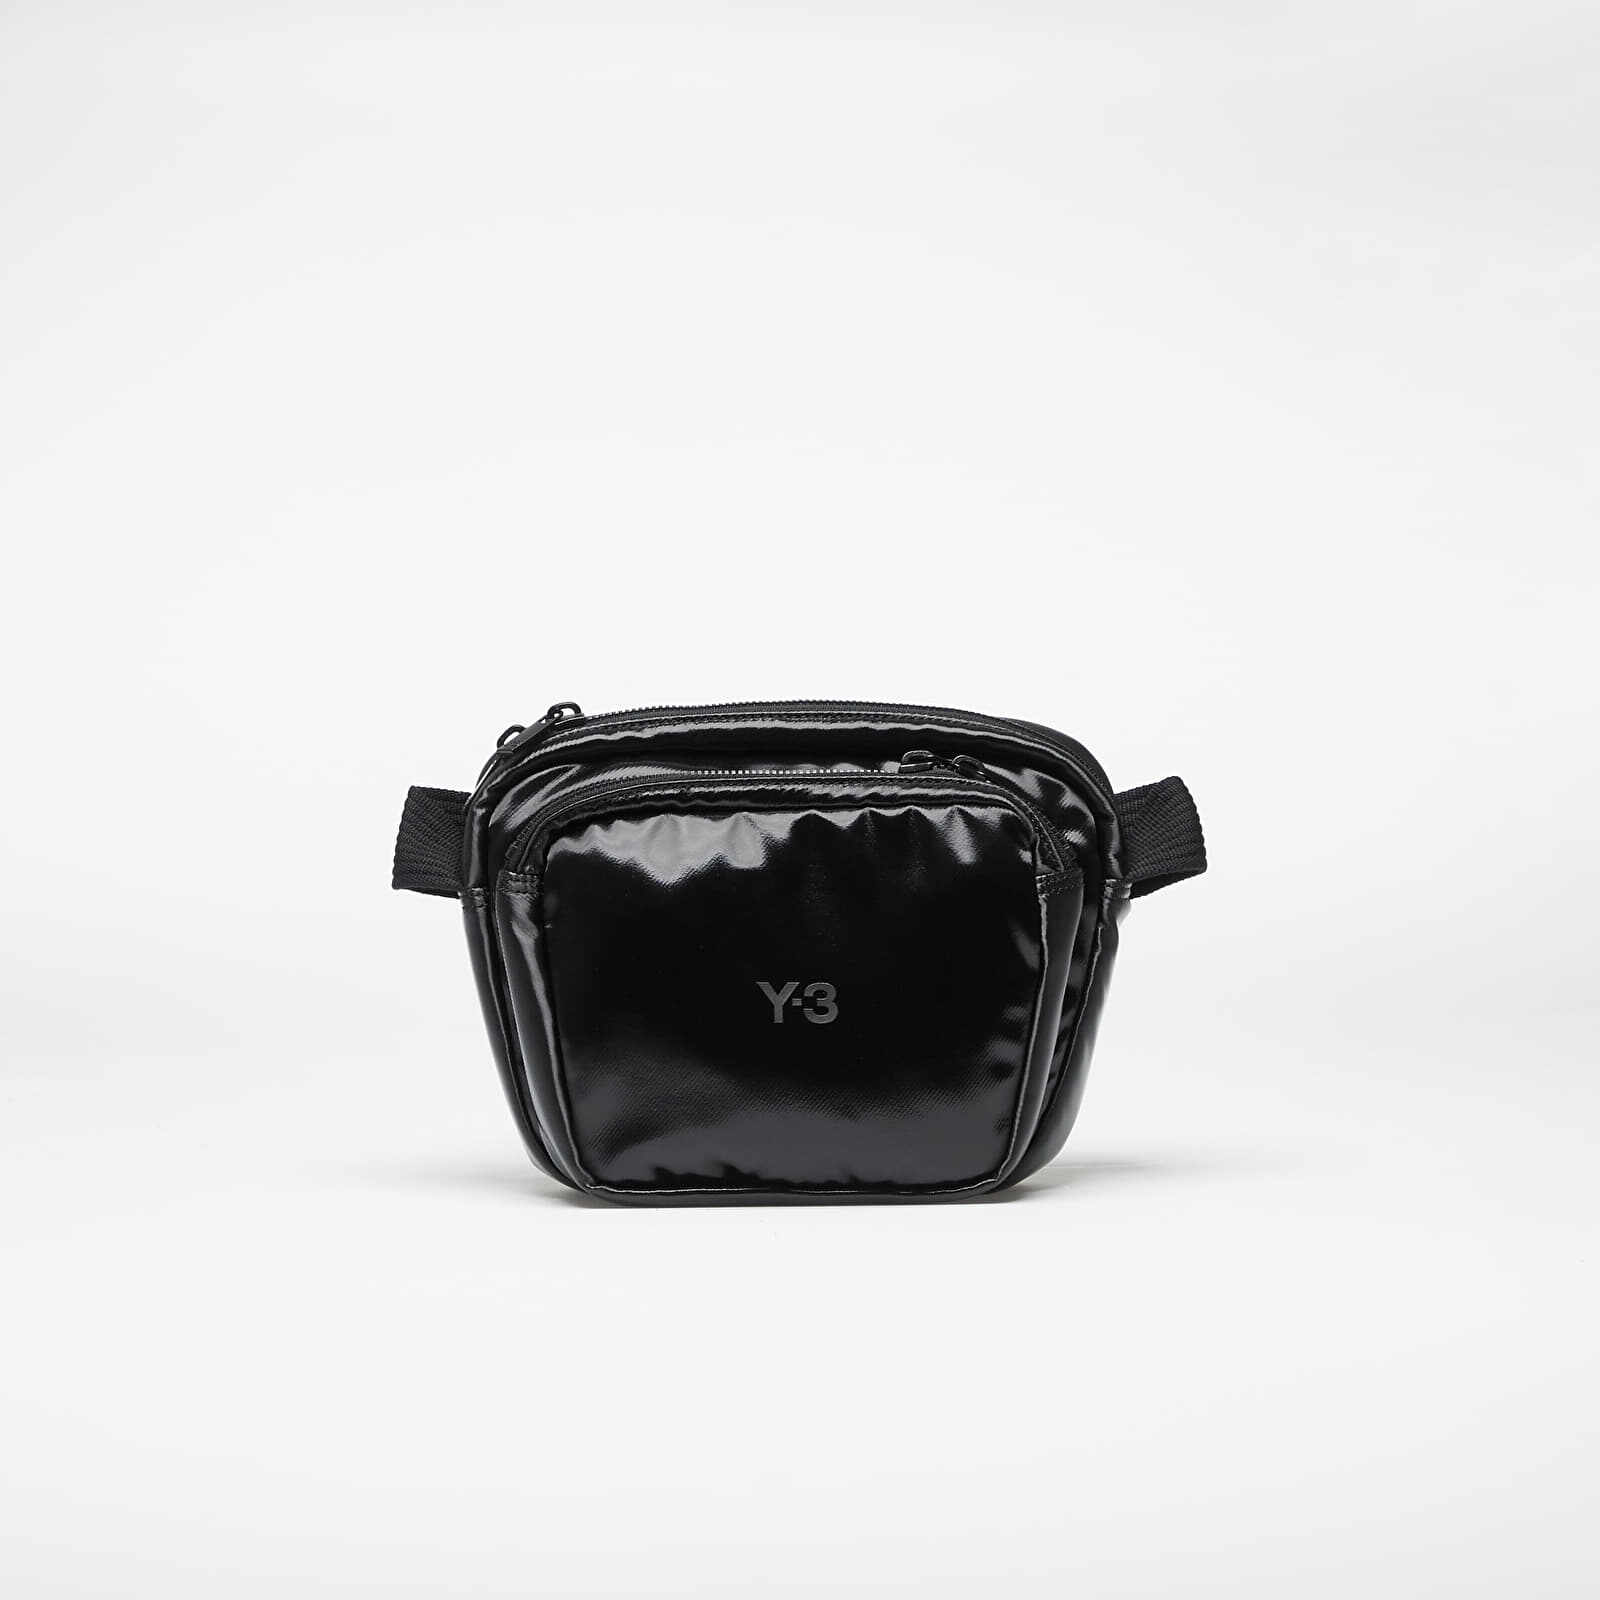 Y-3 X Crossbody Bag Black